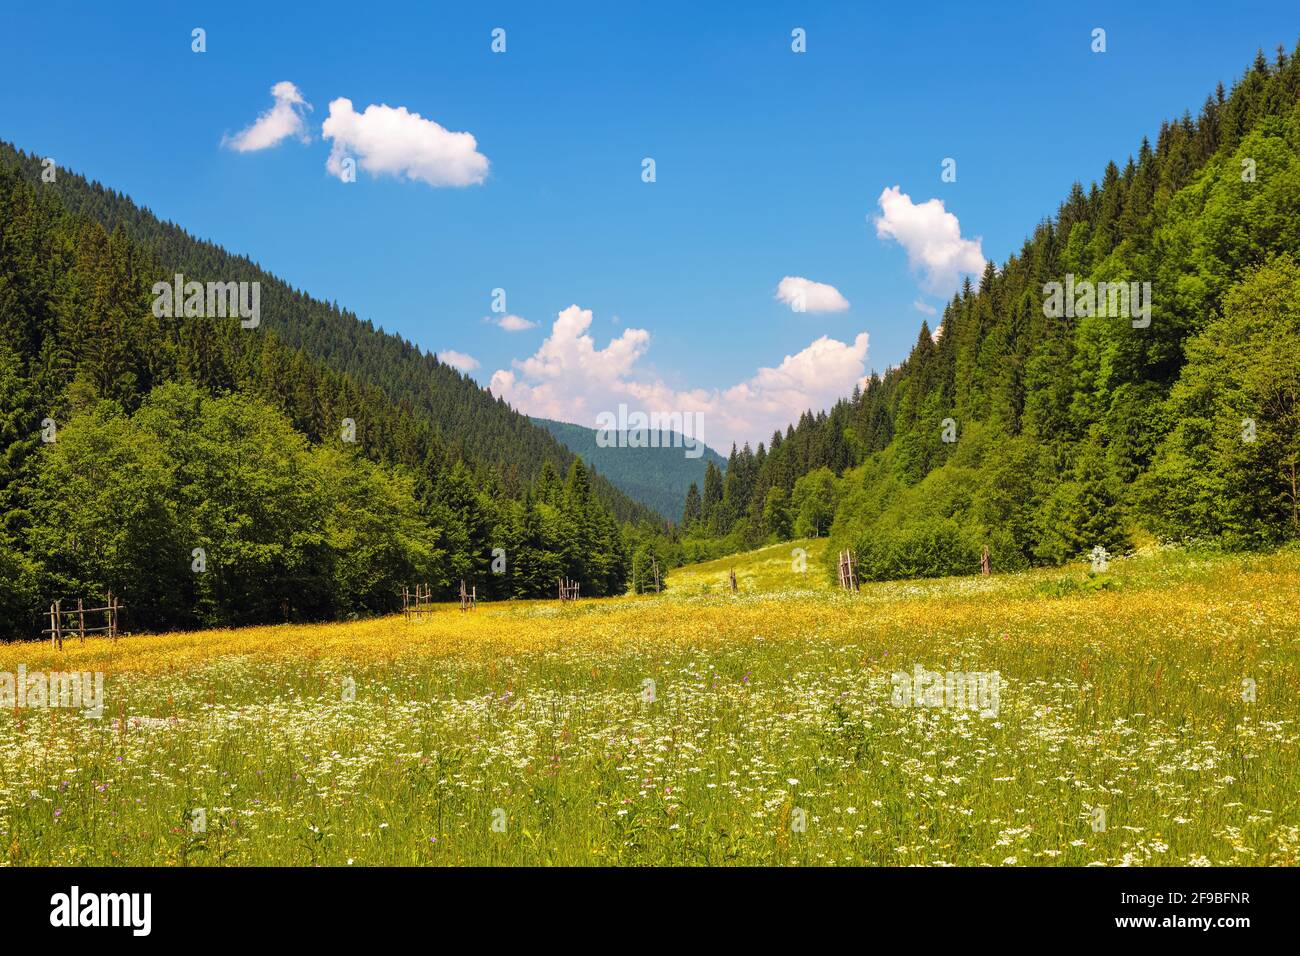 Straße mit einem Holzzaun in einem Feld mit gelben Blumen. Der schöne Blick auf die Landschaft der hohen Berge in den sonnigen Tag ist von der grünen va geöffnet Stockfoto